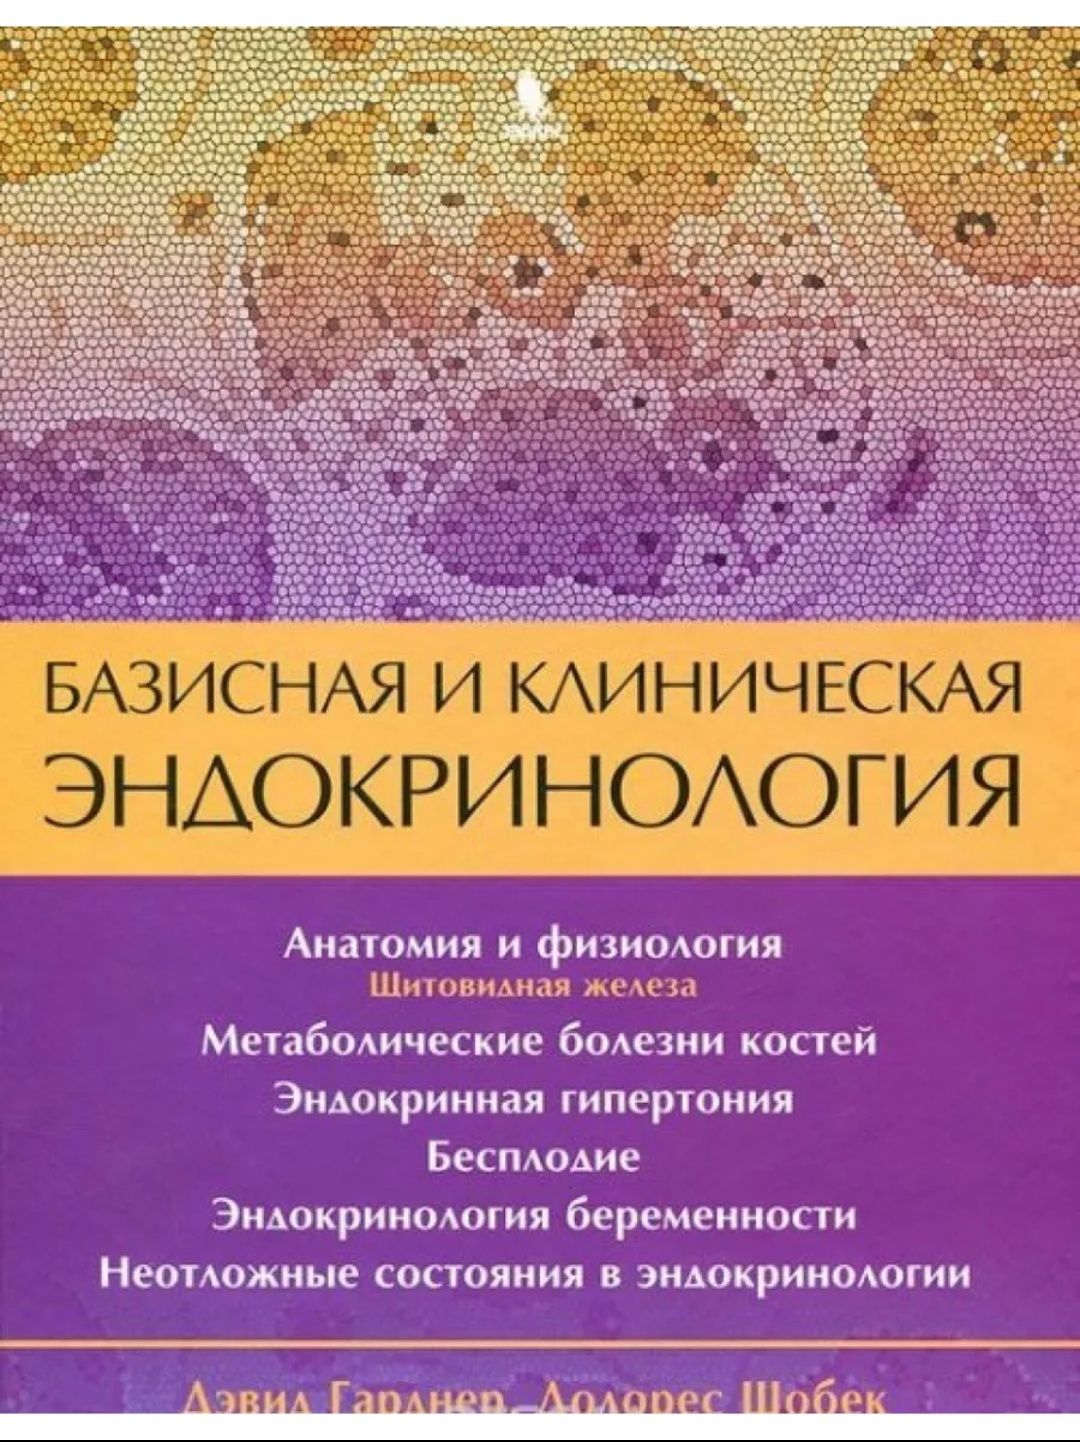 Книги по эндокринологии Гарднера и  Шобека 2 тома